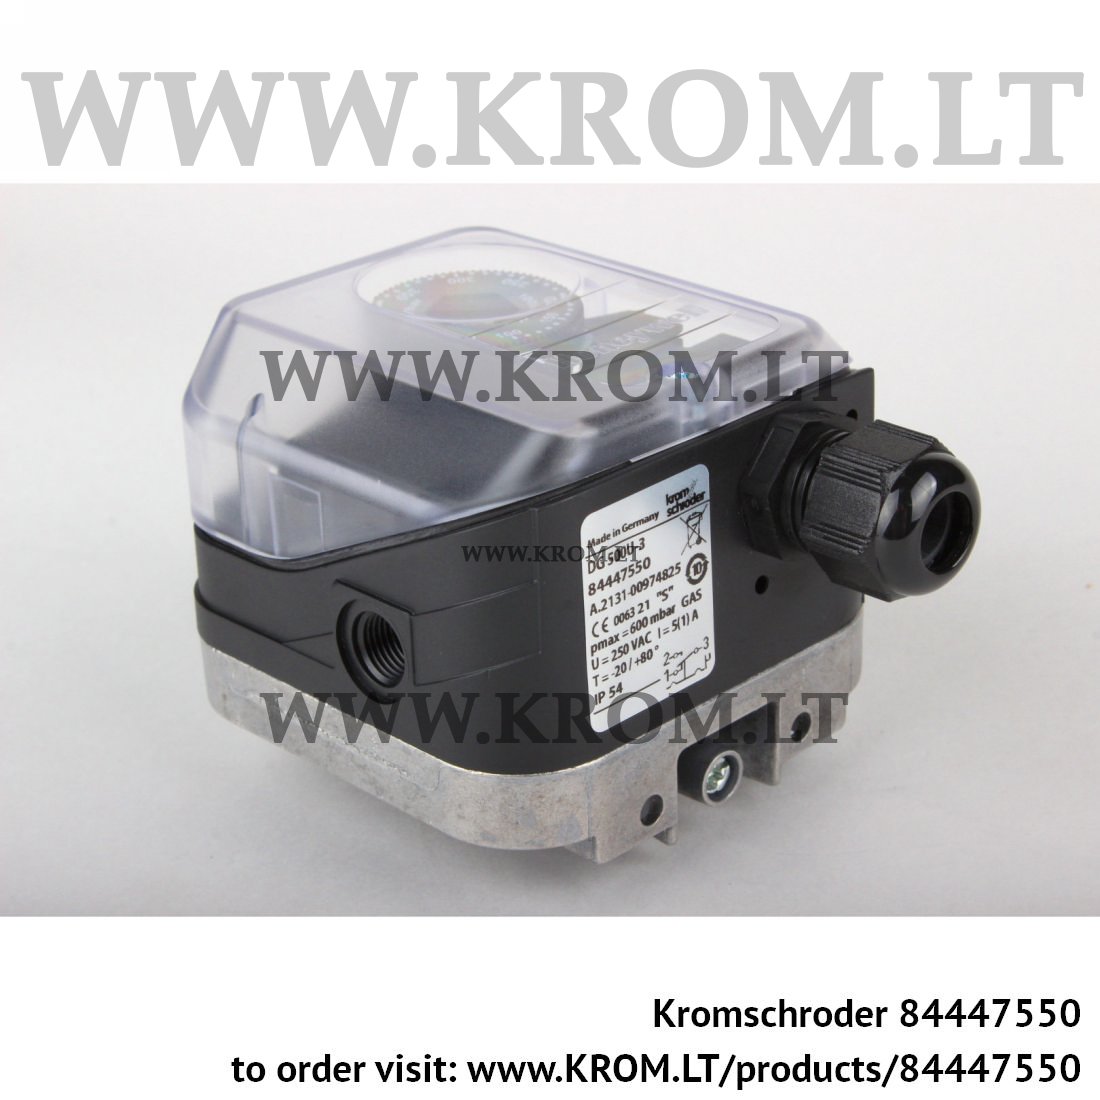 Kromschroder DG 500U-3, 84447550 pressure switch for gas | Online